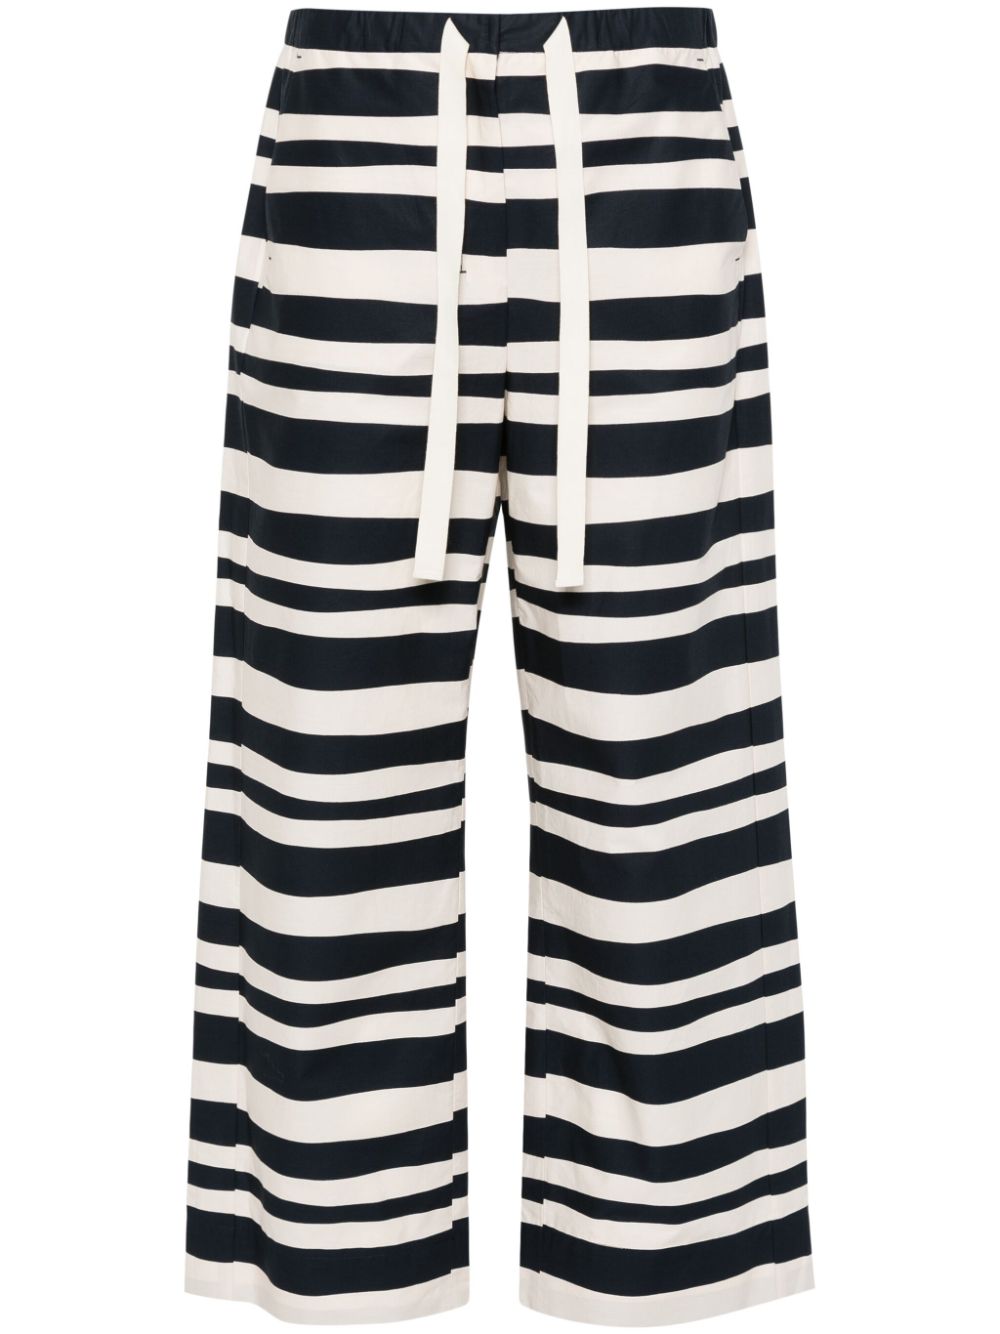 Stripe pattern popeline texture pants